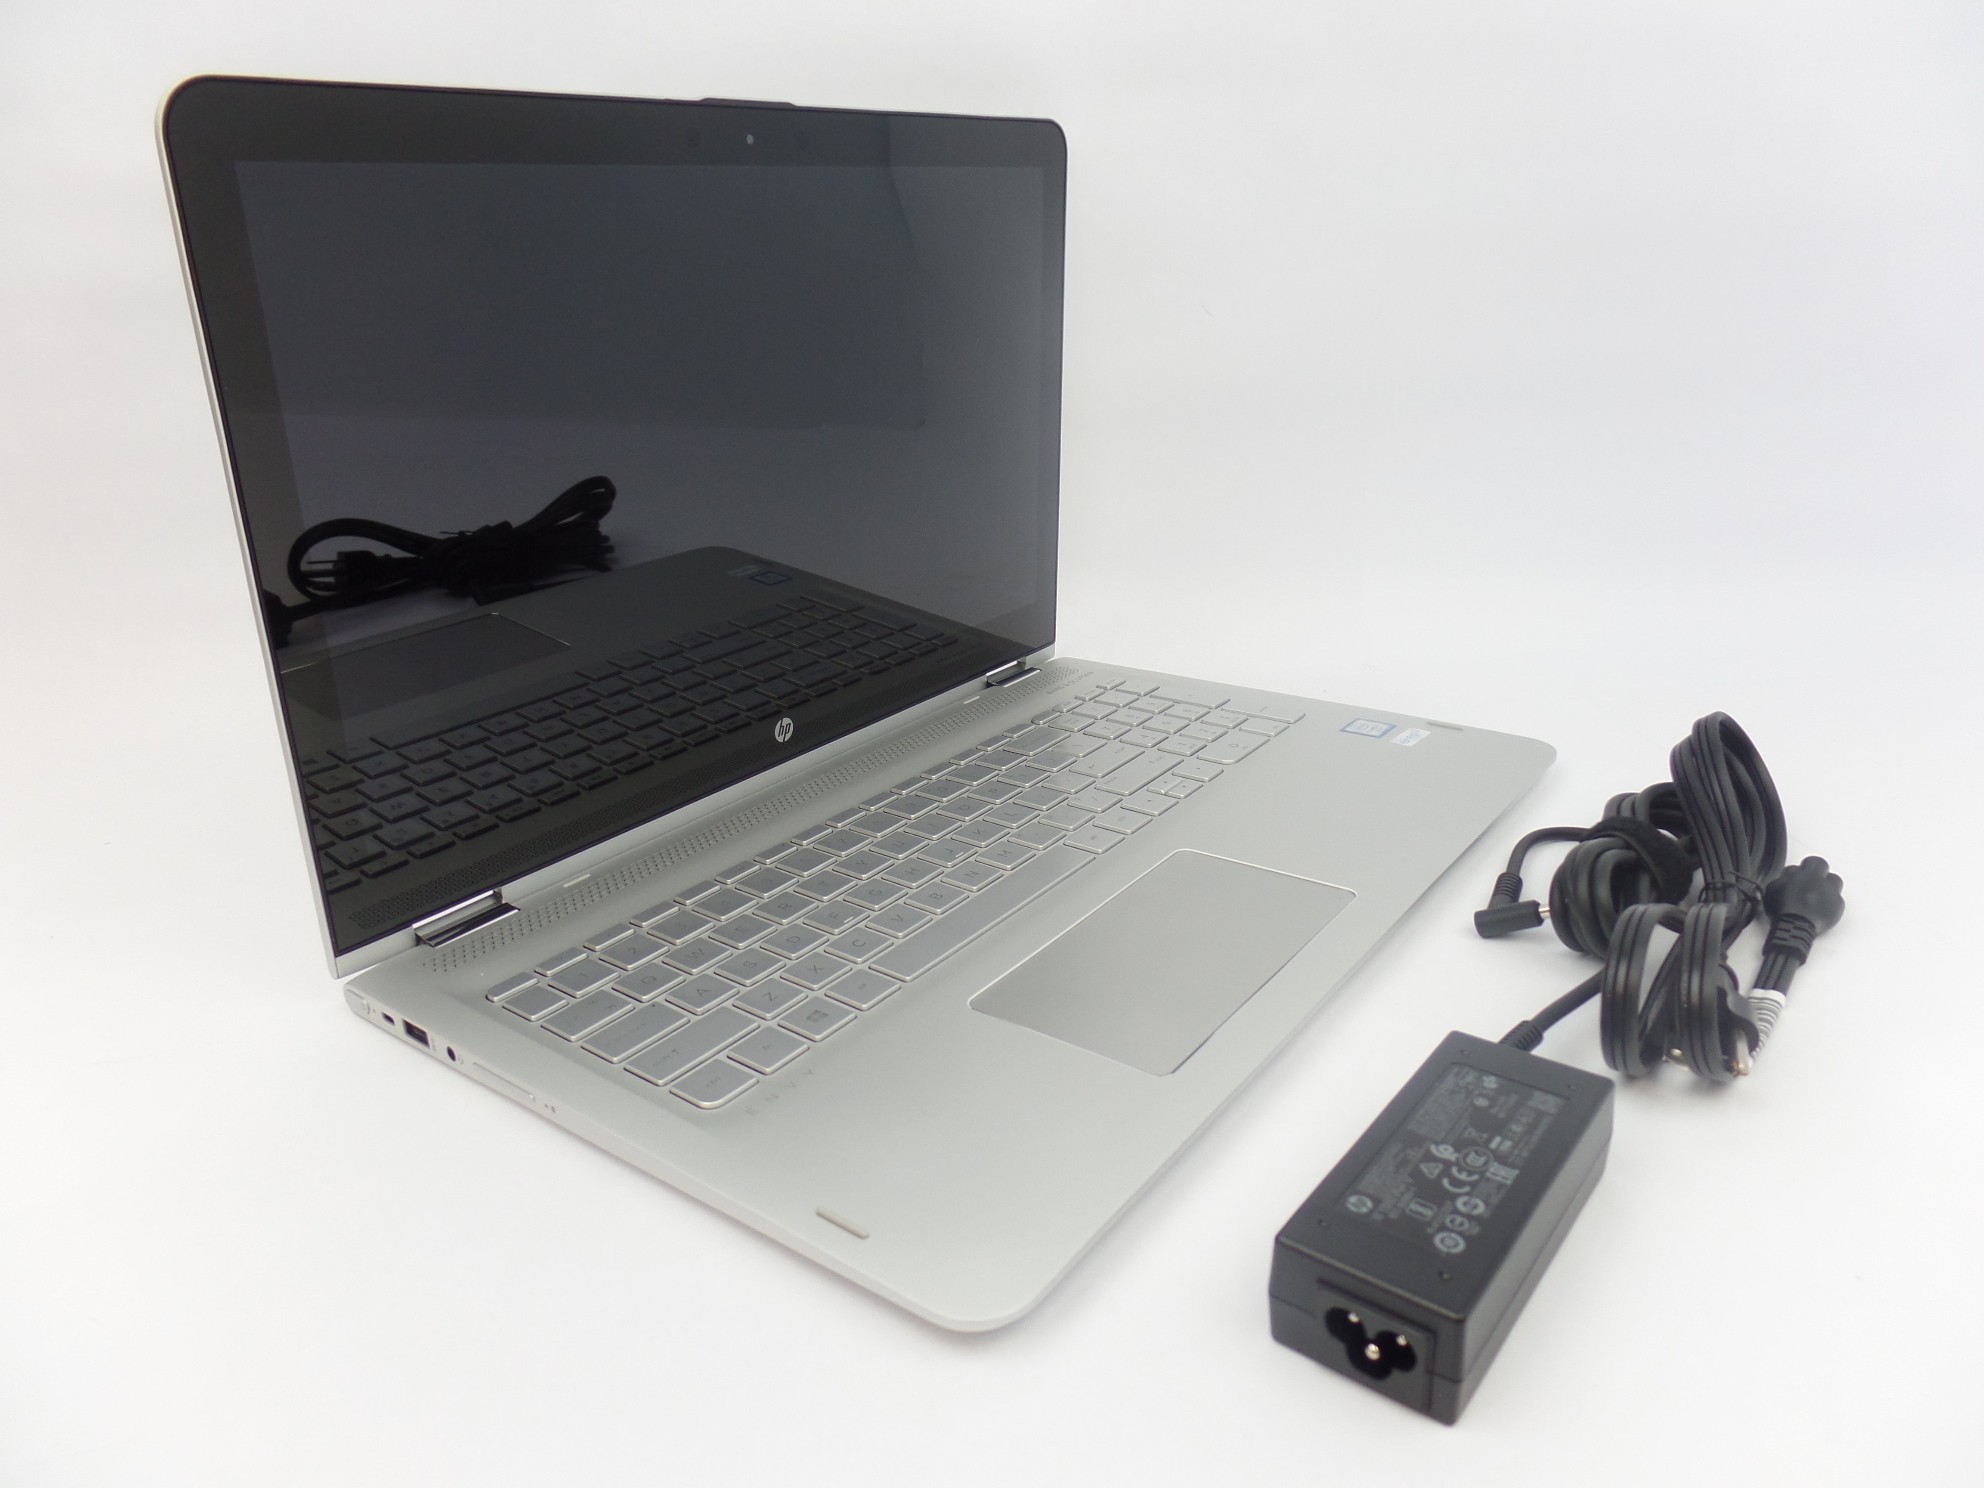 HP ENVY x360 m6-aq005dx 15.6" FHD Touch i7-6560U 12GB 1TB W10H Laptop W2K41UA U